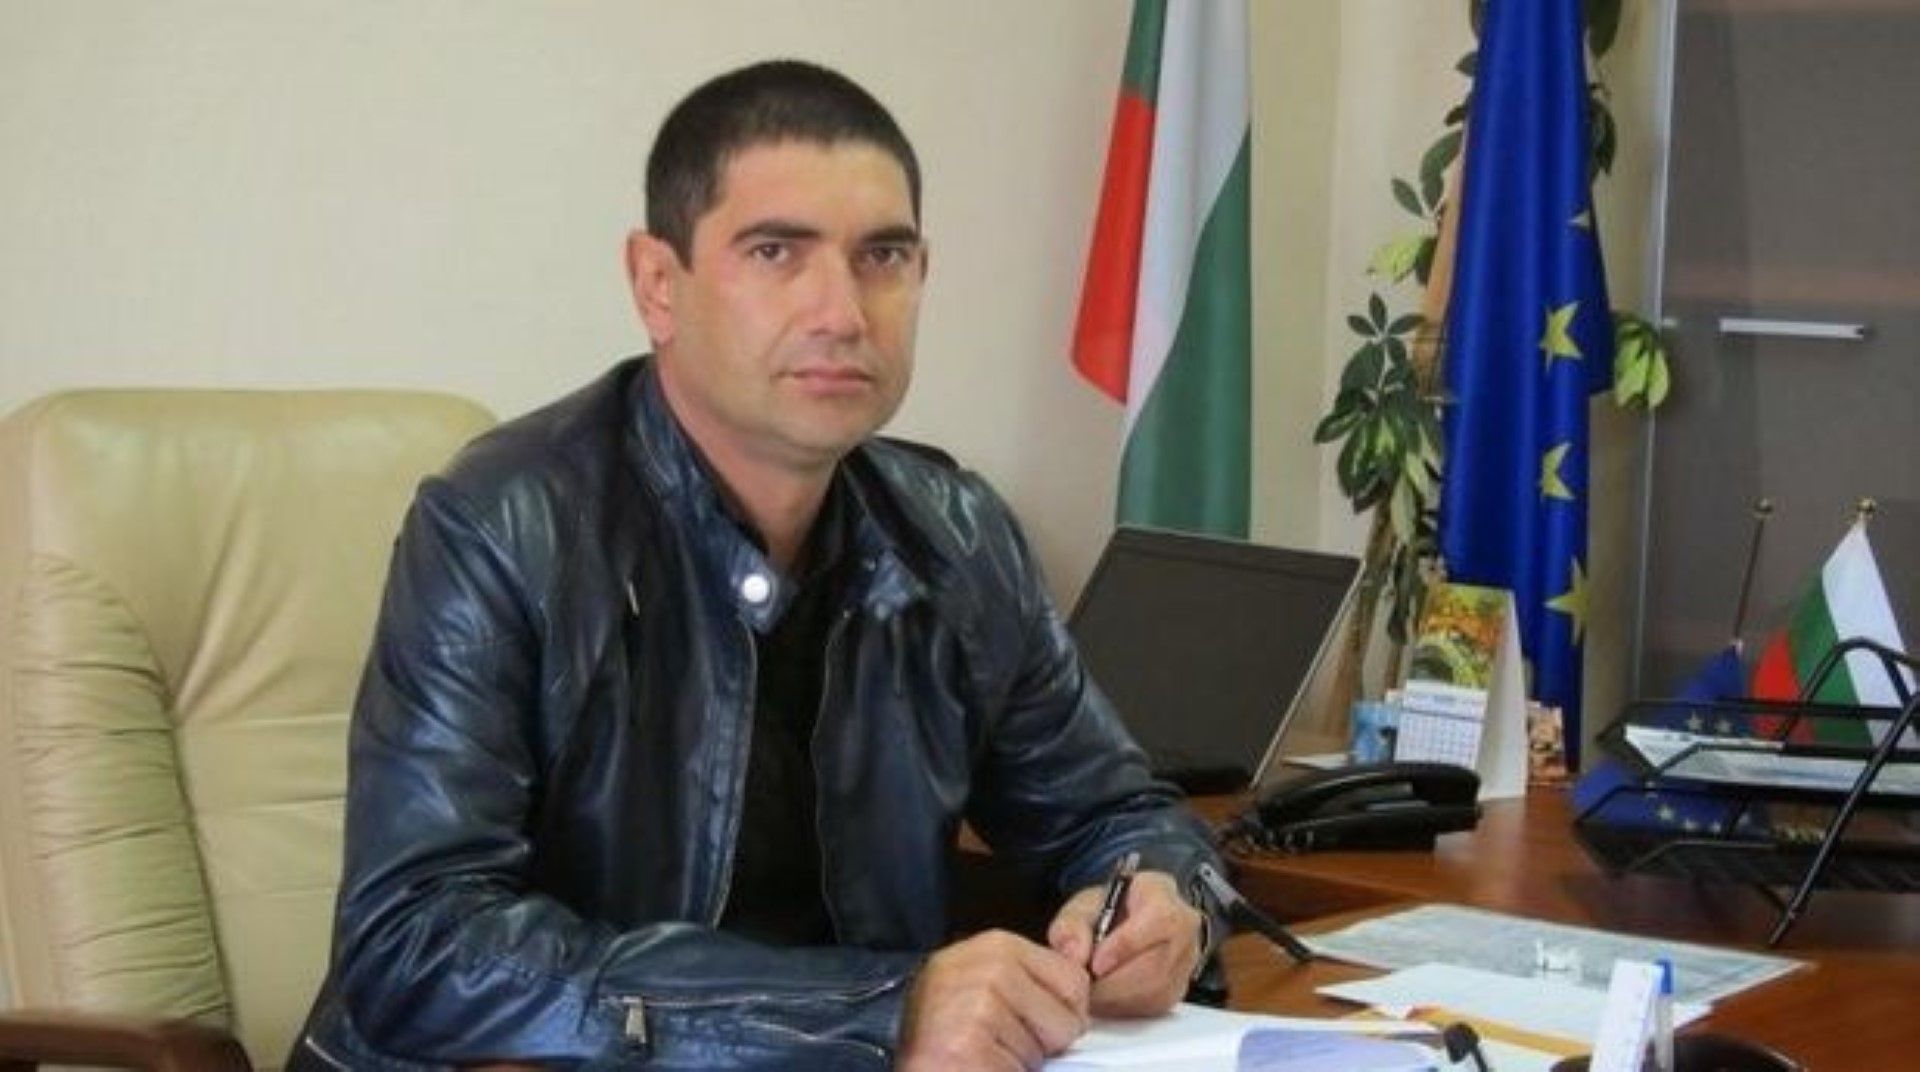 Лазар Влайков първо бе отстранен, а след това върнат от съда в Общинския съвет на Септември